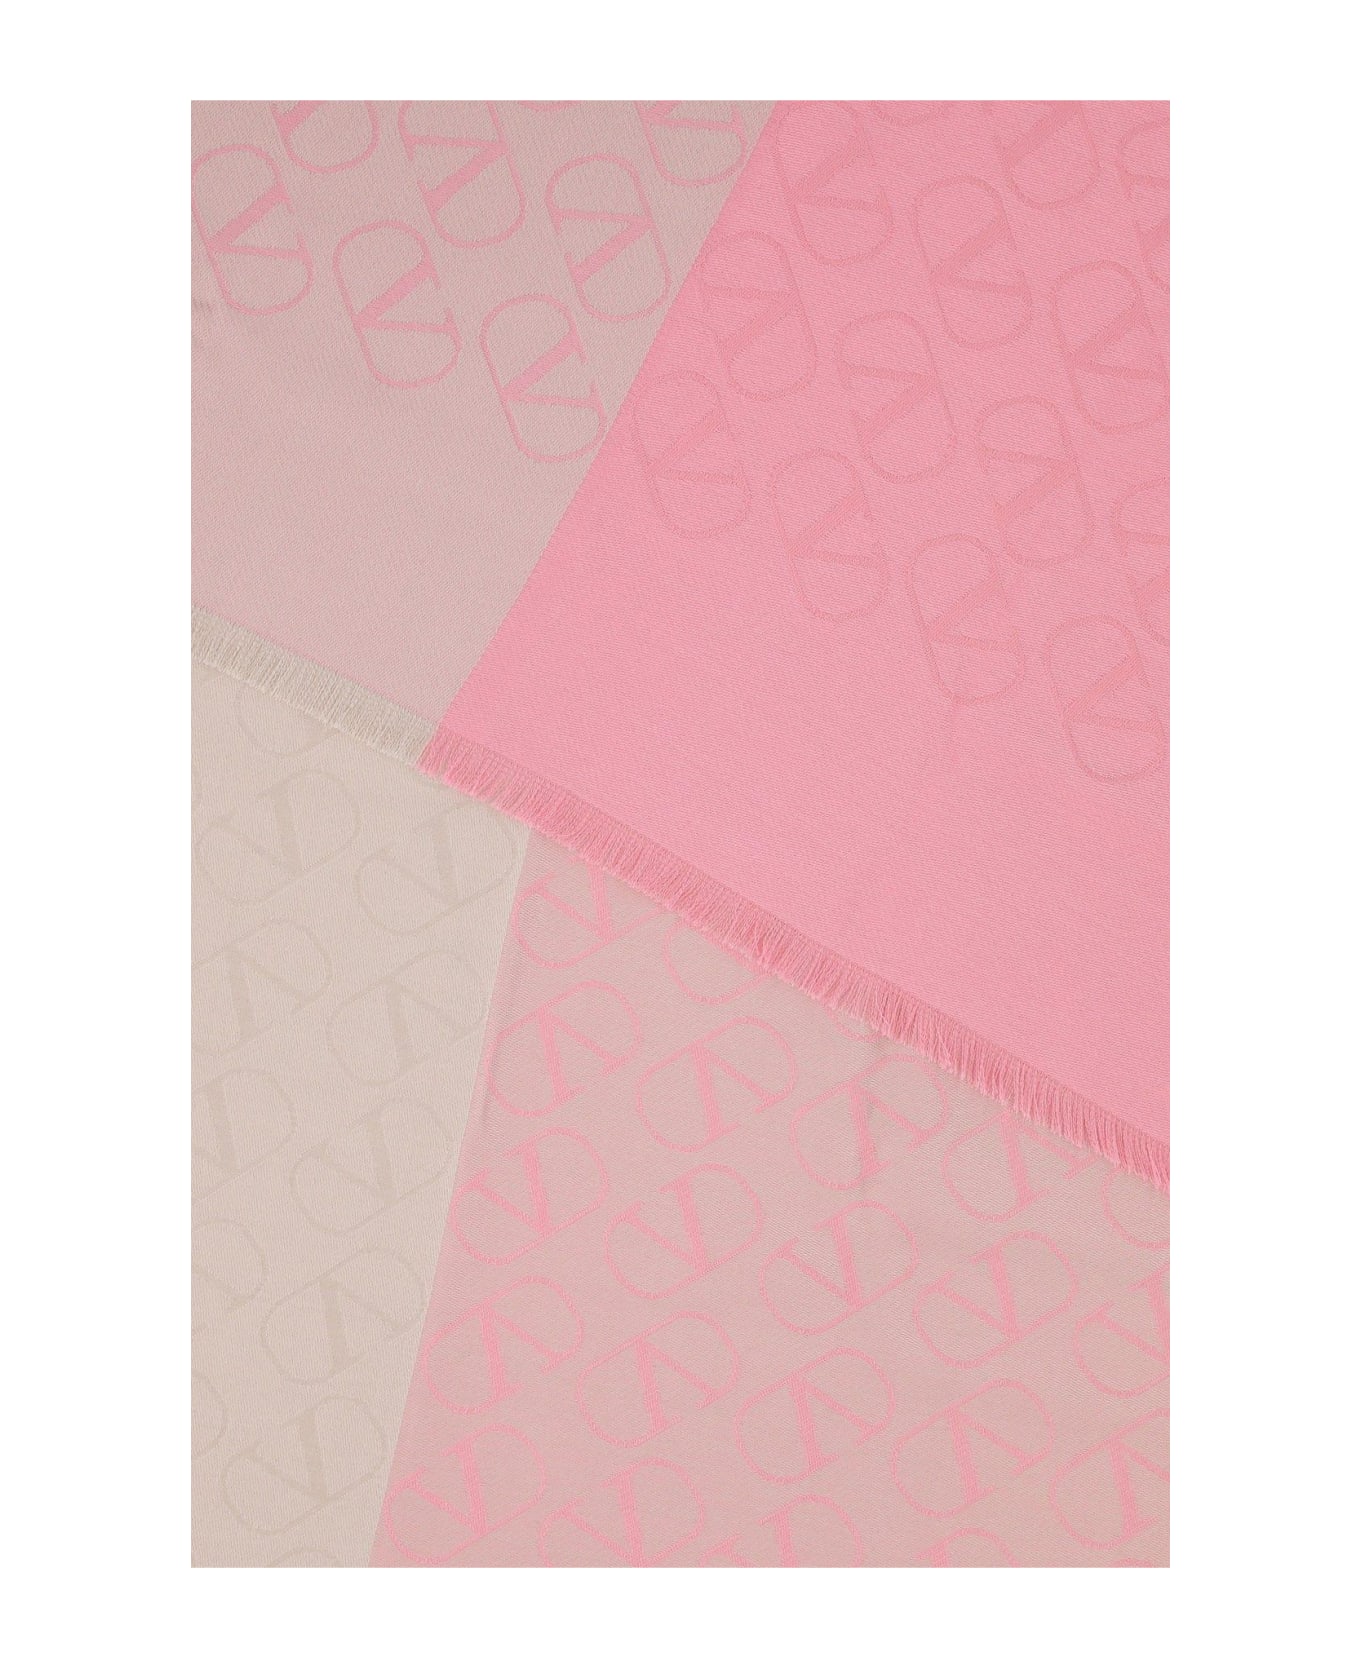 Valentino Garavani Embroidered Silk Blend Scarf - Pink スカーフ＆ストール